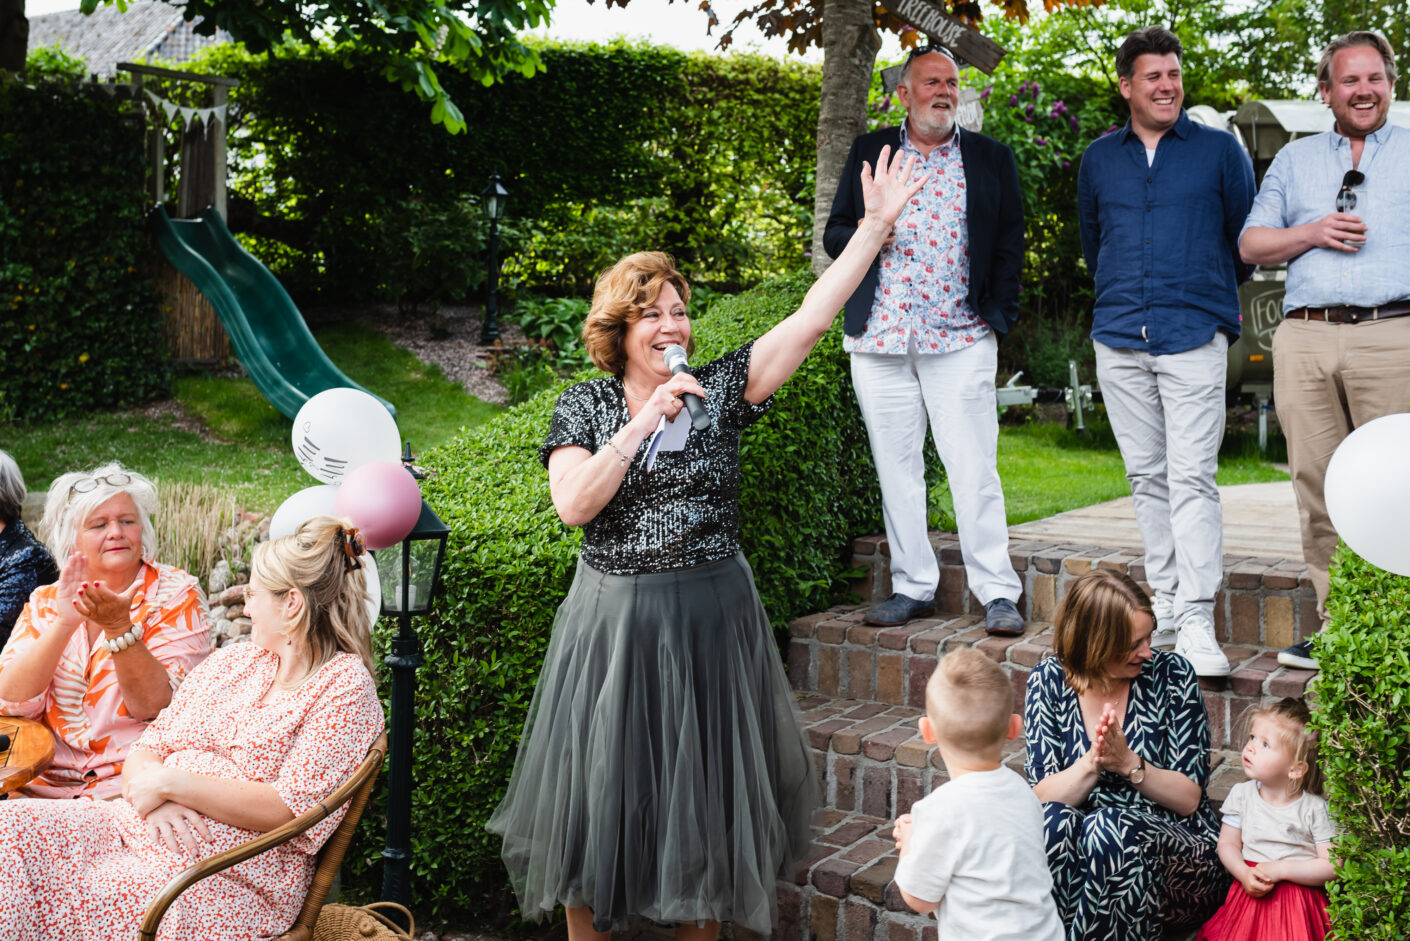 Jantina Fotografie Assen, Drenthe, Jantina Mulder, trouwfotograaf Drenthe, trouwfotograaf Groningen, trouwfotograaf Friesland, trouwen op later leeftijd, voor de tweede keer trouwen, trouwen met je kinderen erbij